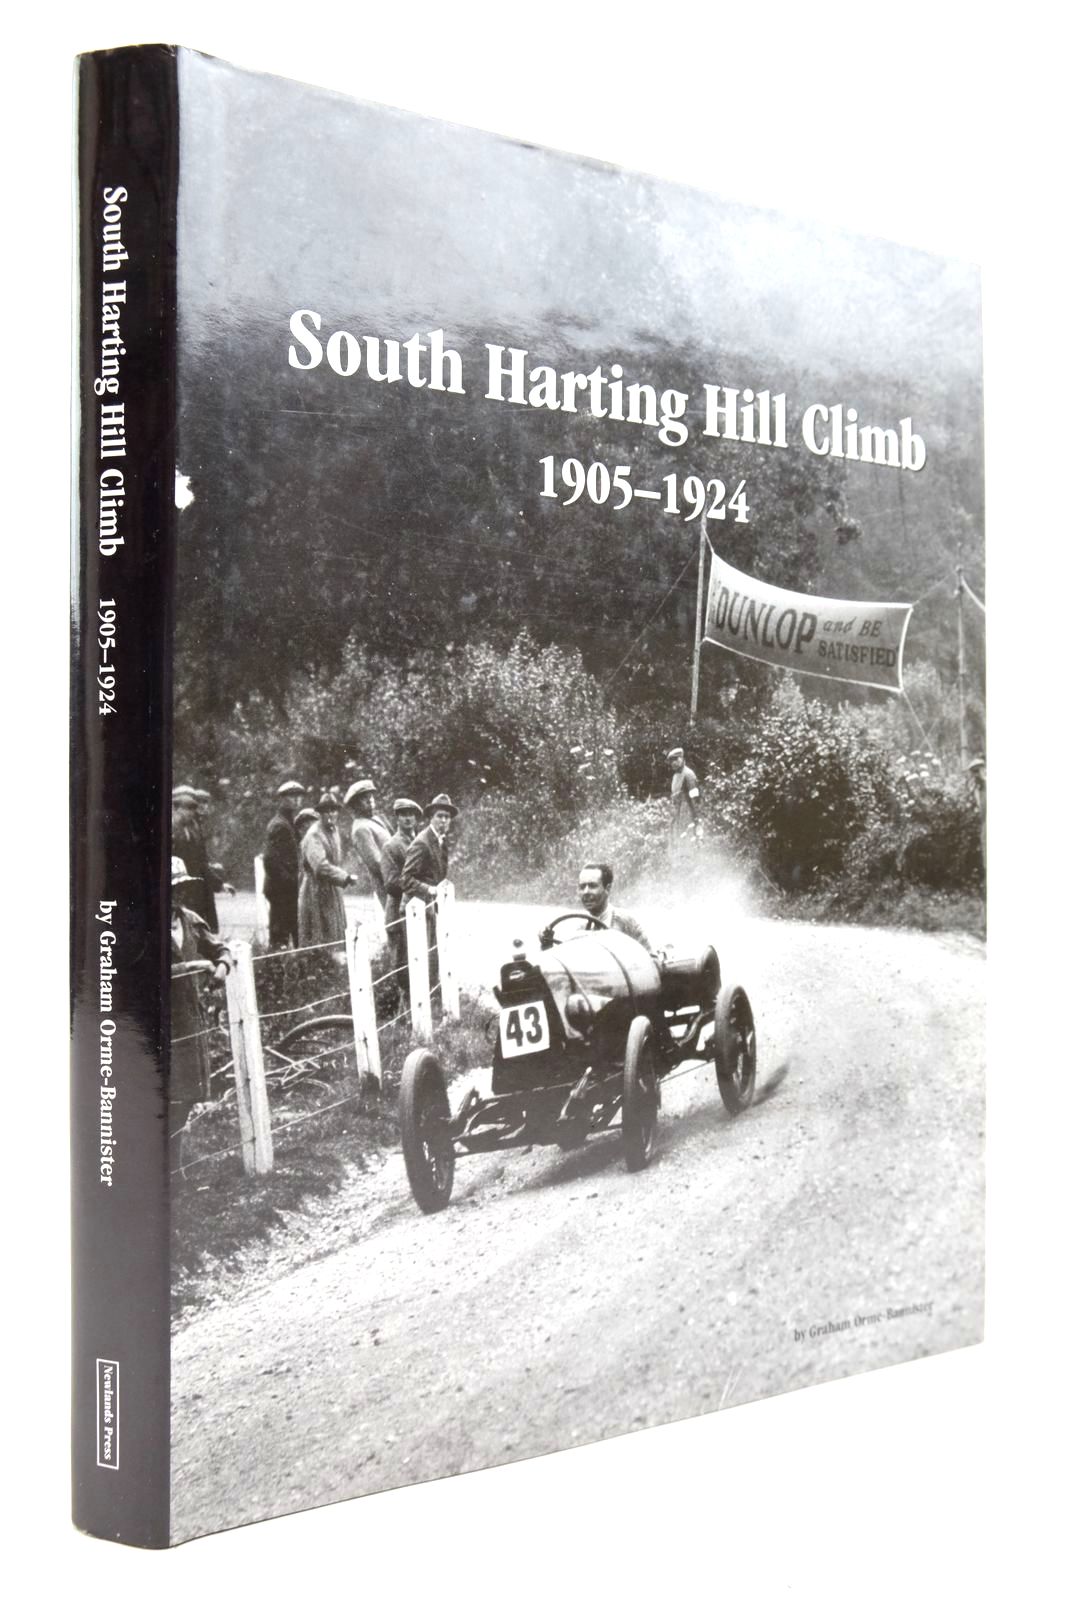 South Harting Hill Climb 1905 - 1924